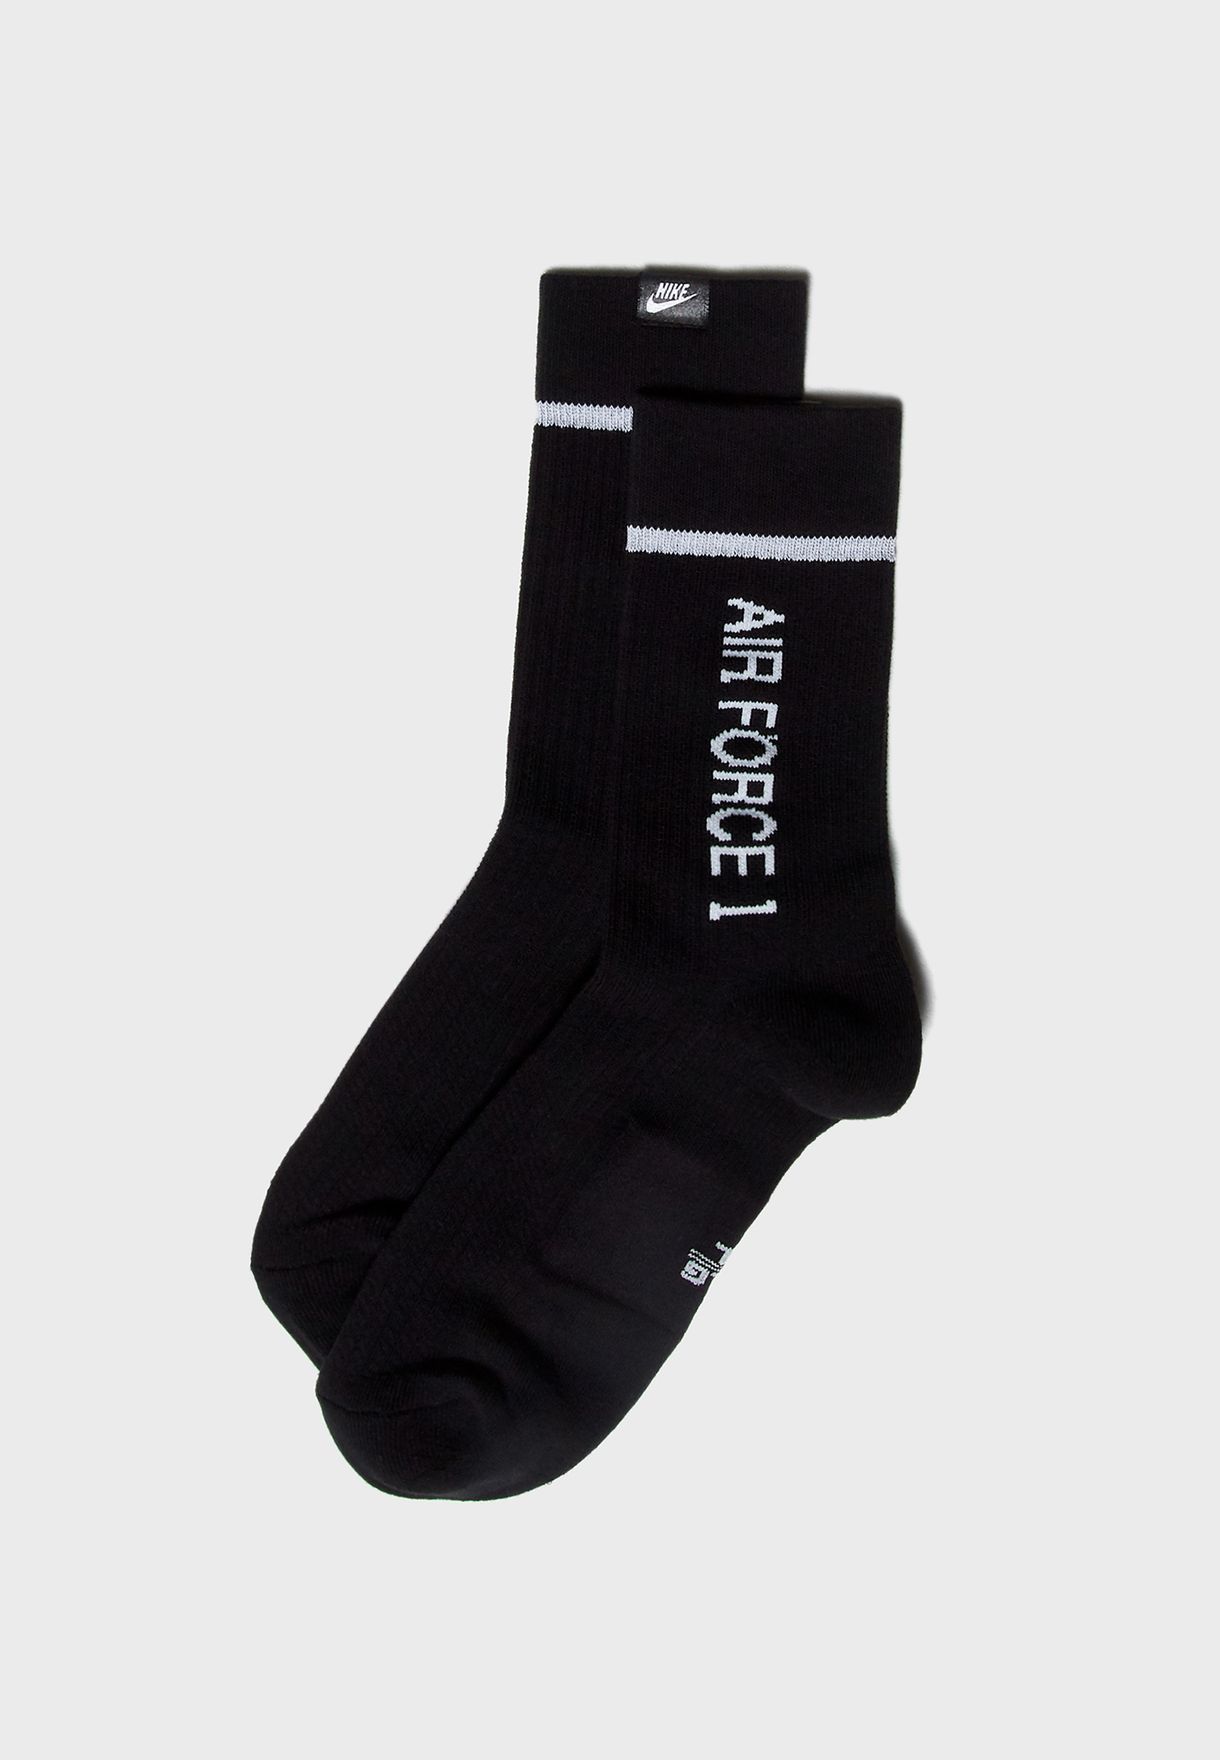 af1 socks